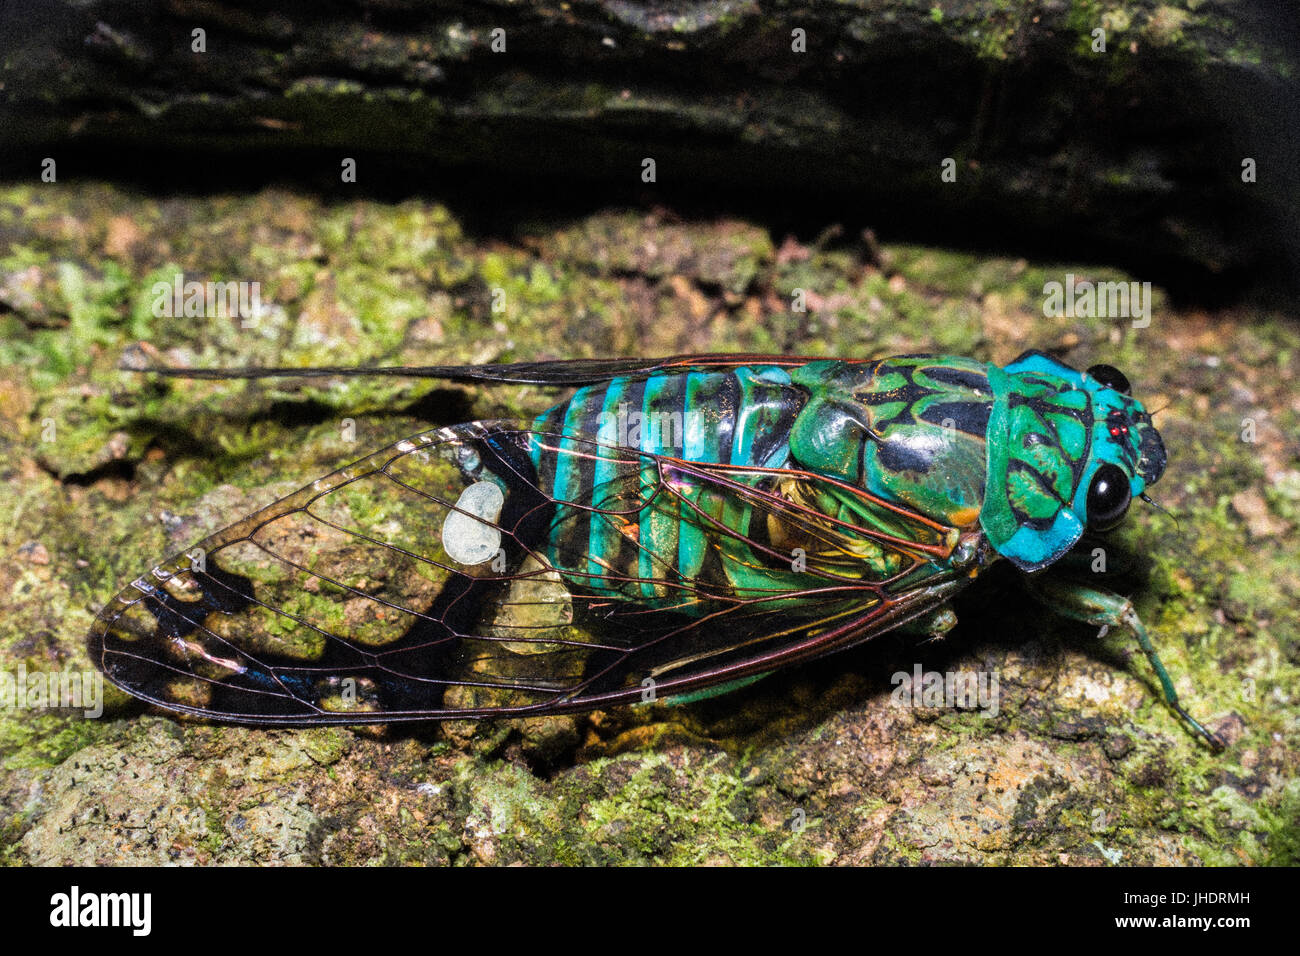 Insecte cigale close up image avec des couleurs intenses Banque D'Images